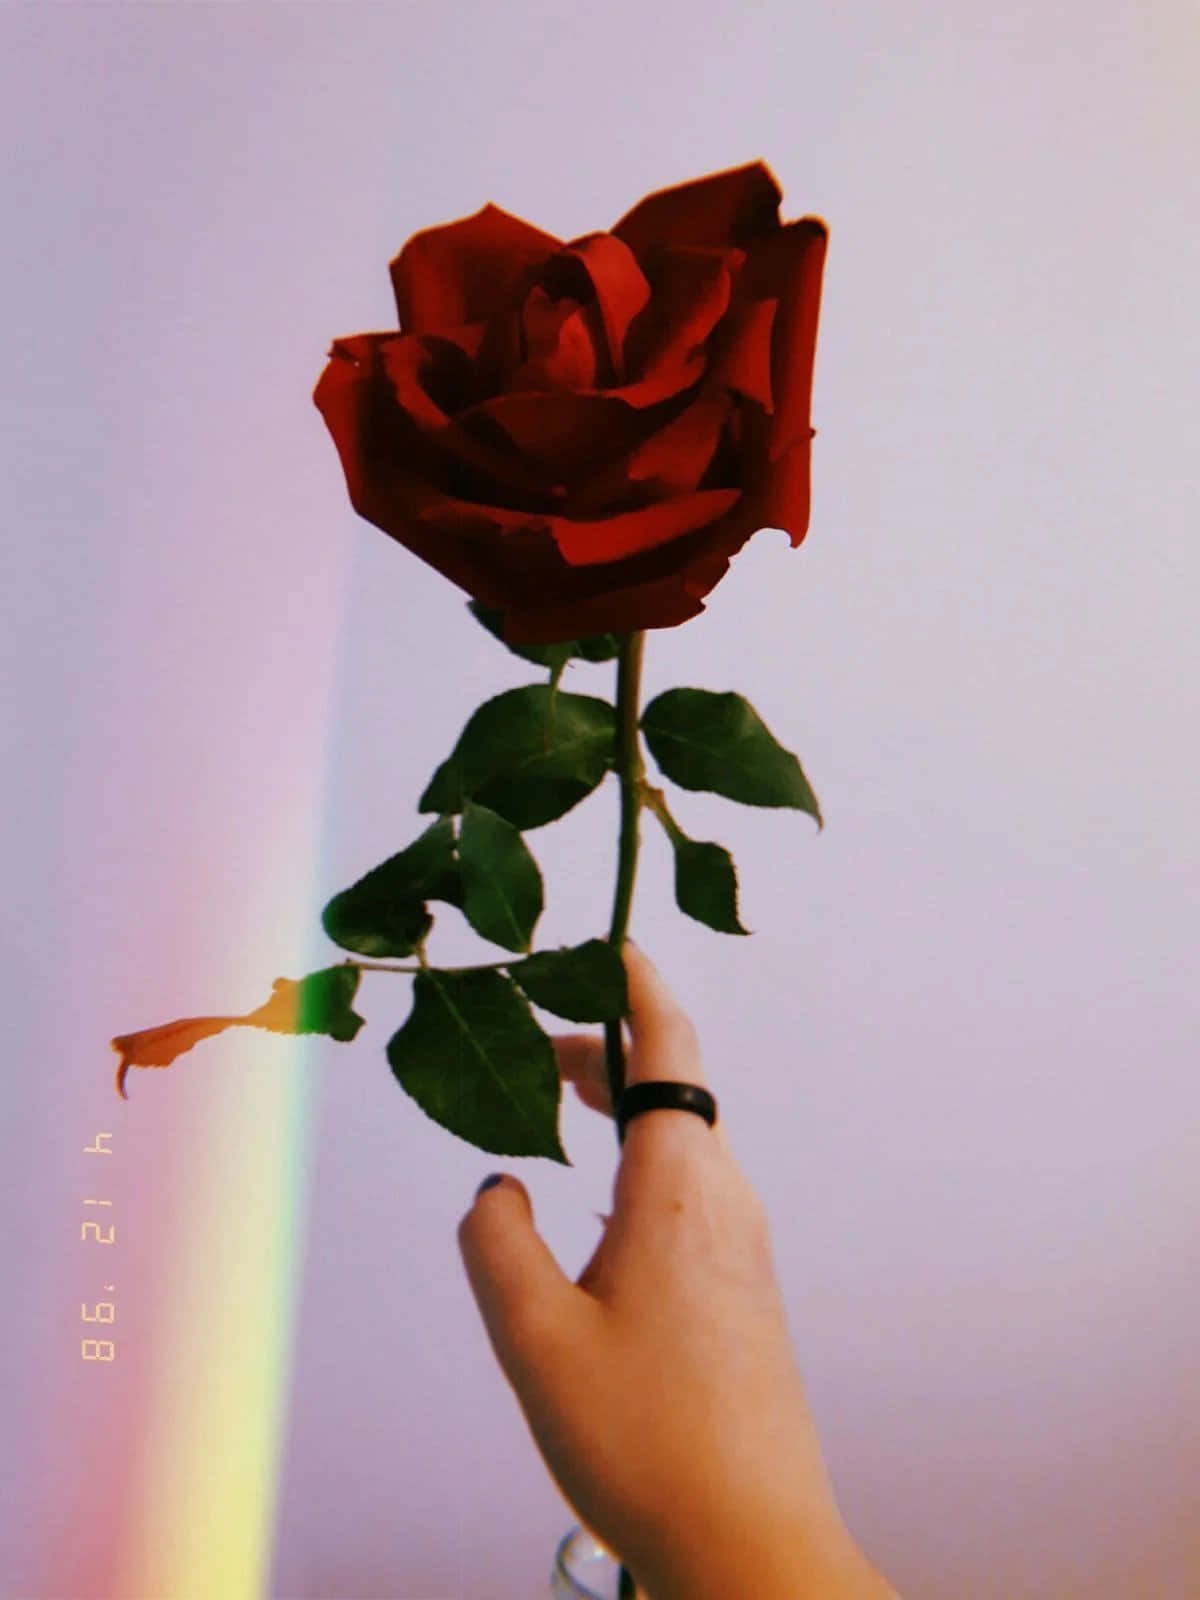 Eineperson Hält Eine Rote Rose Mit Einem Regenbogen Im Hintergrund.